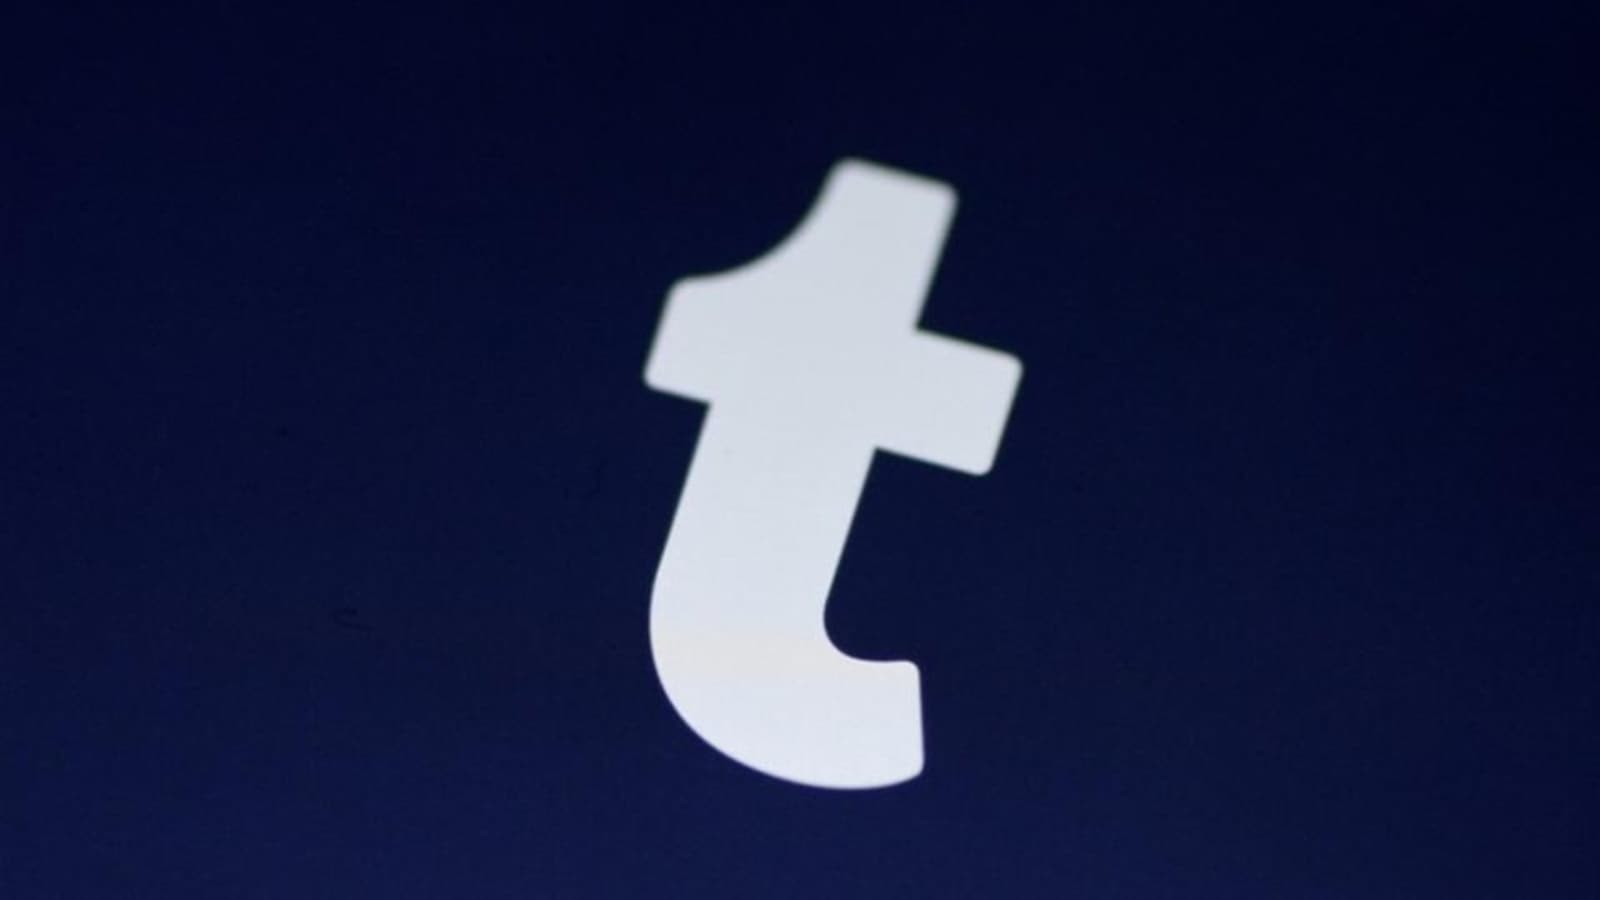 Twitter dan Reddit sedang kacau, Tumblr sedang merencanakan desain ulang besar-besaran untuk menarik pelanggan mereka